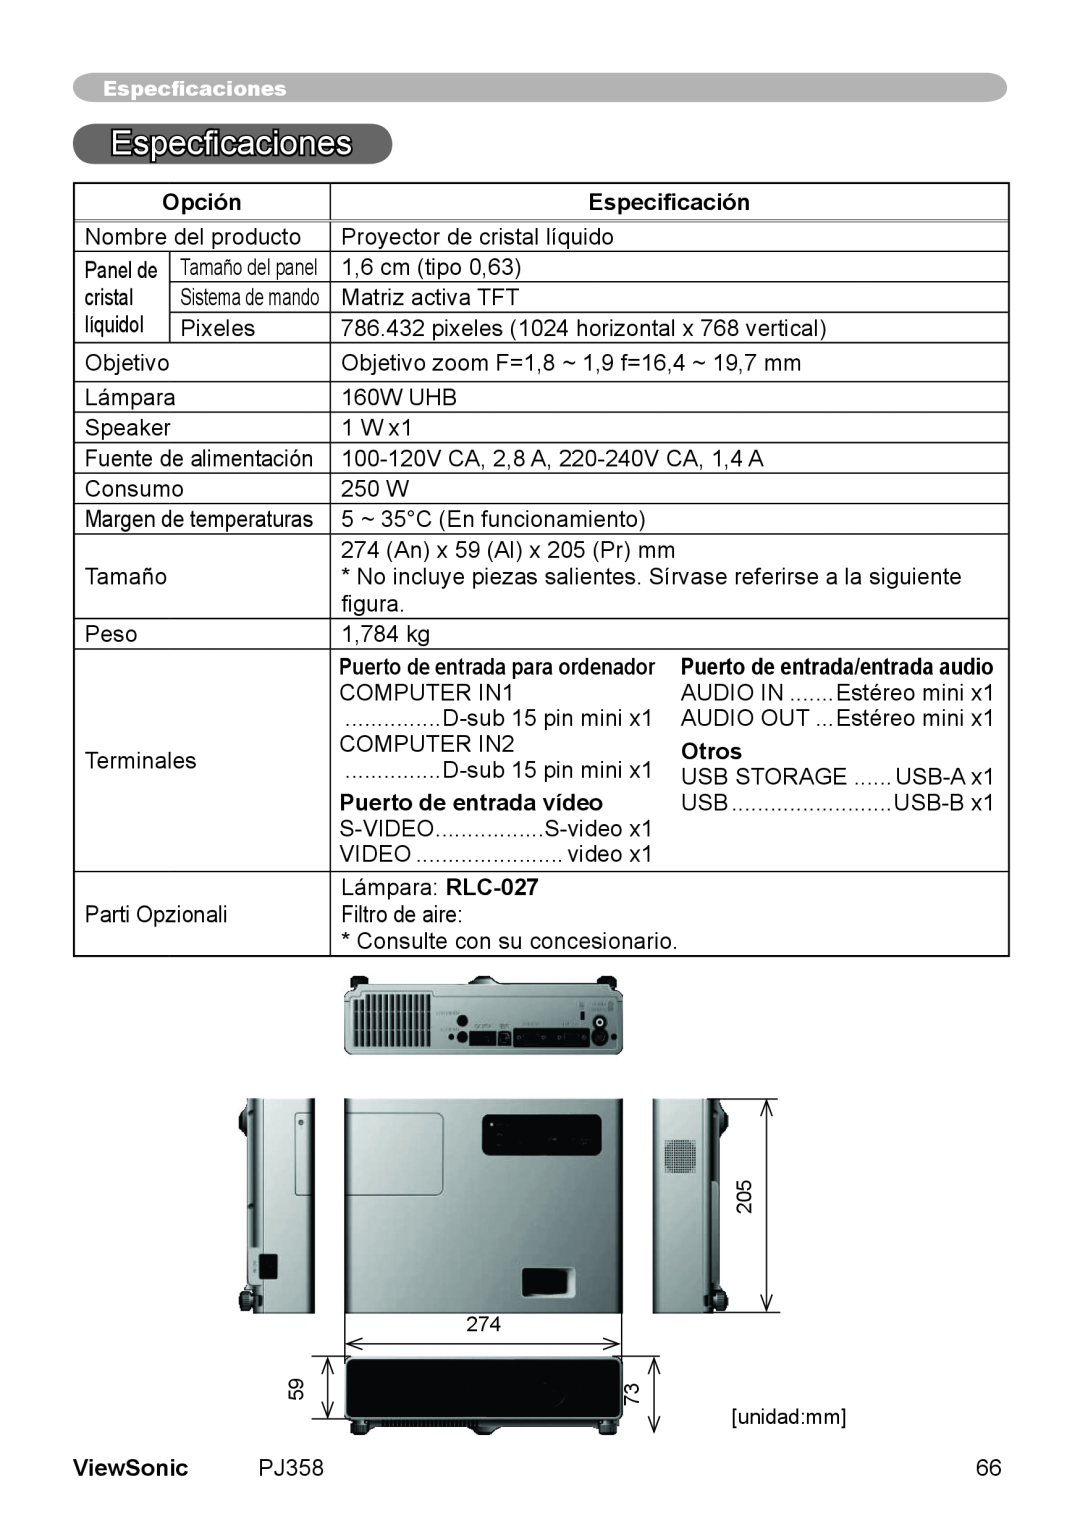 ViewSonic PJ358, VS11611 manual Especficaciones, Opción, Especificación, Otros, Puerto de entrada vídeo, ViewSonic 